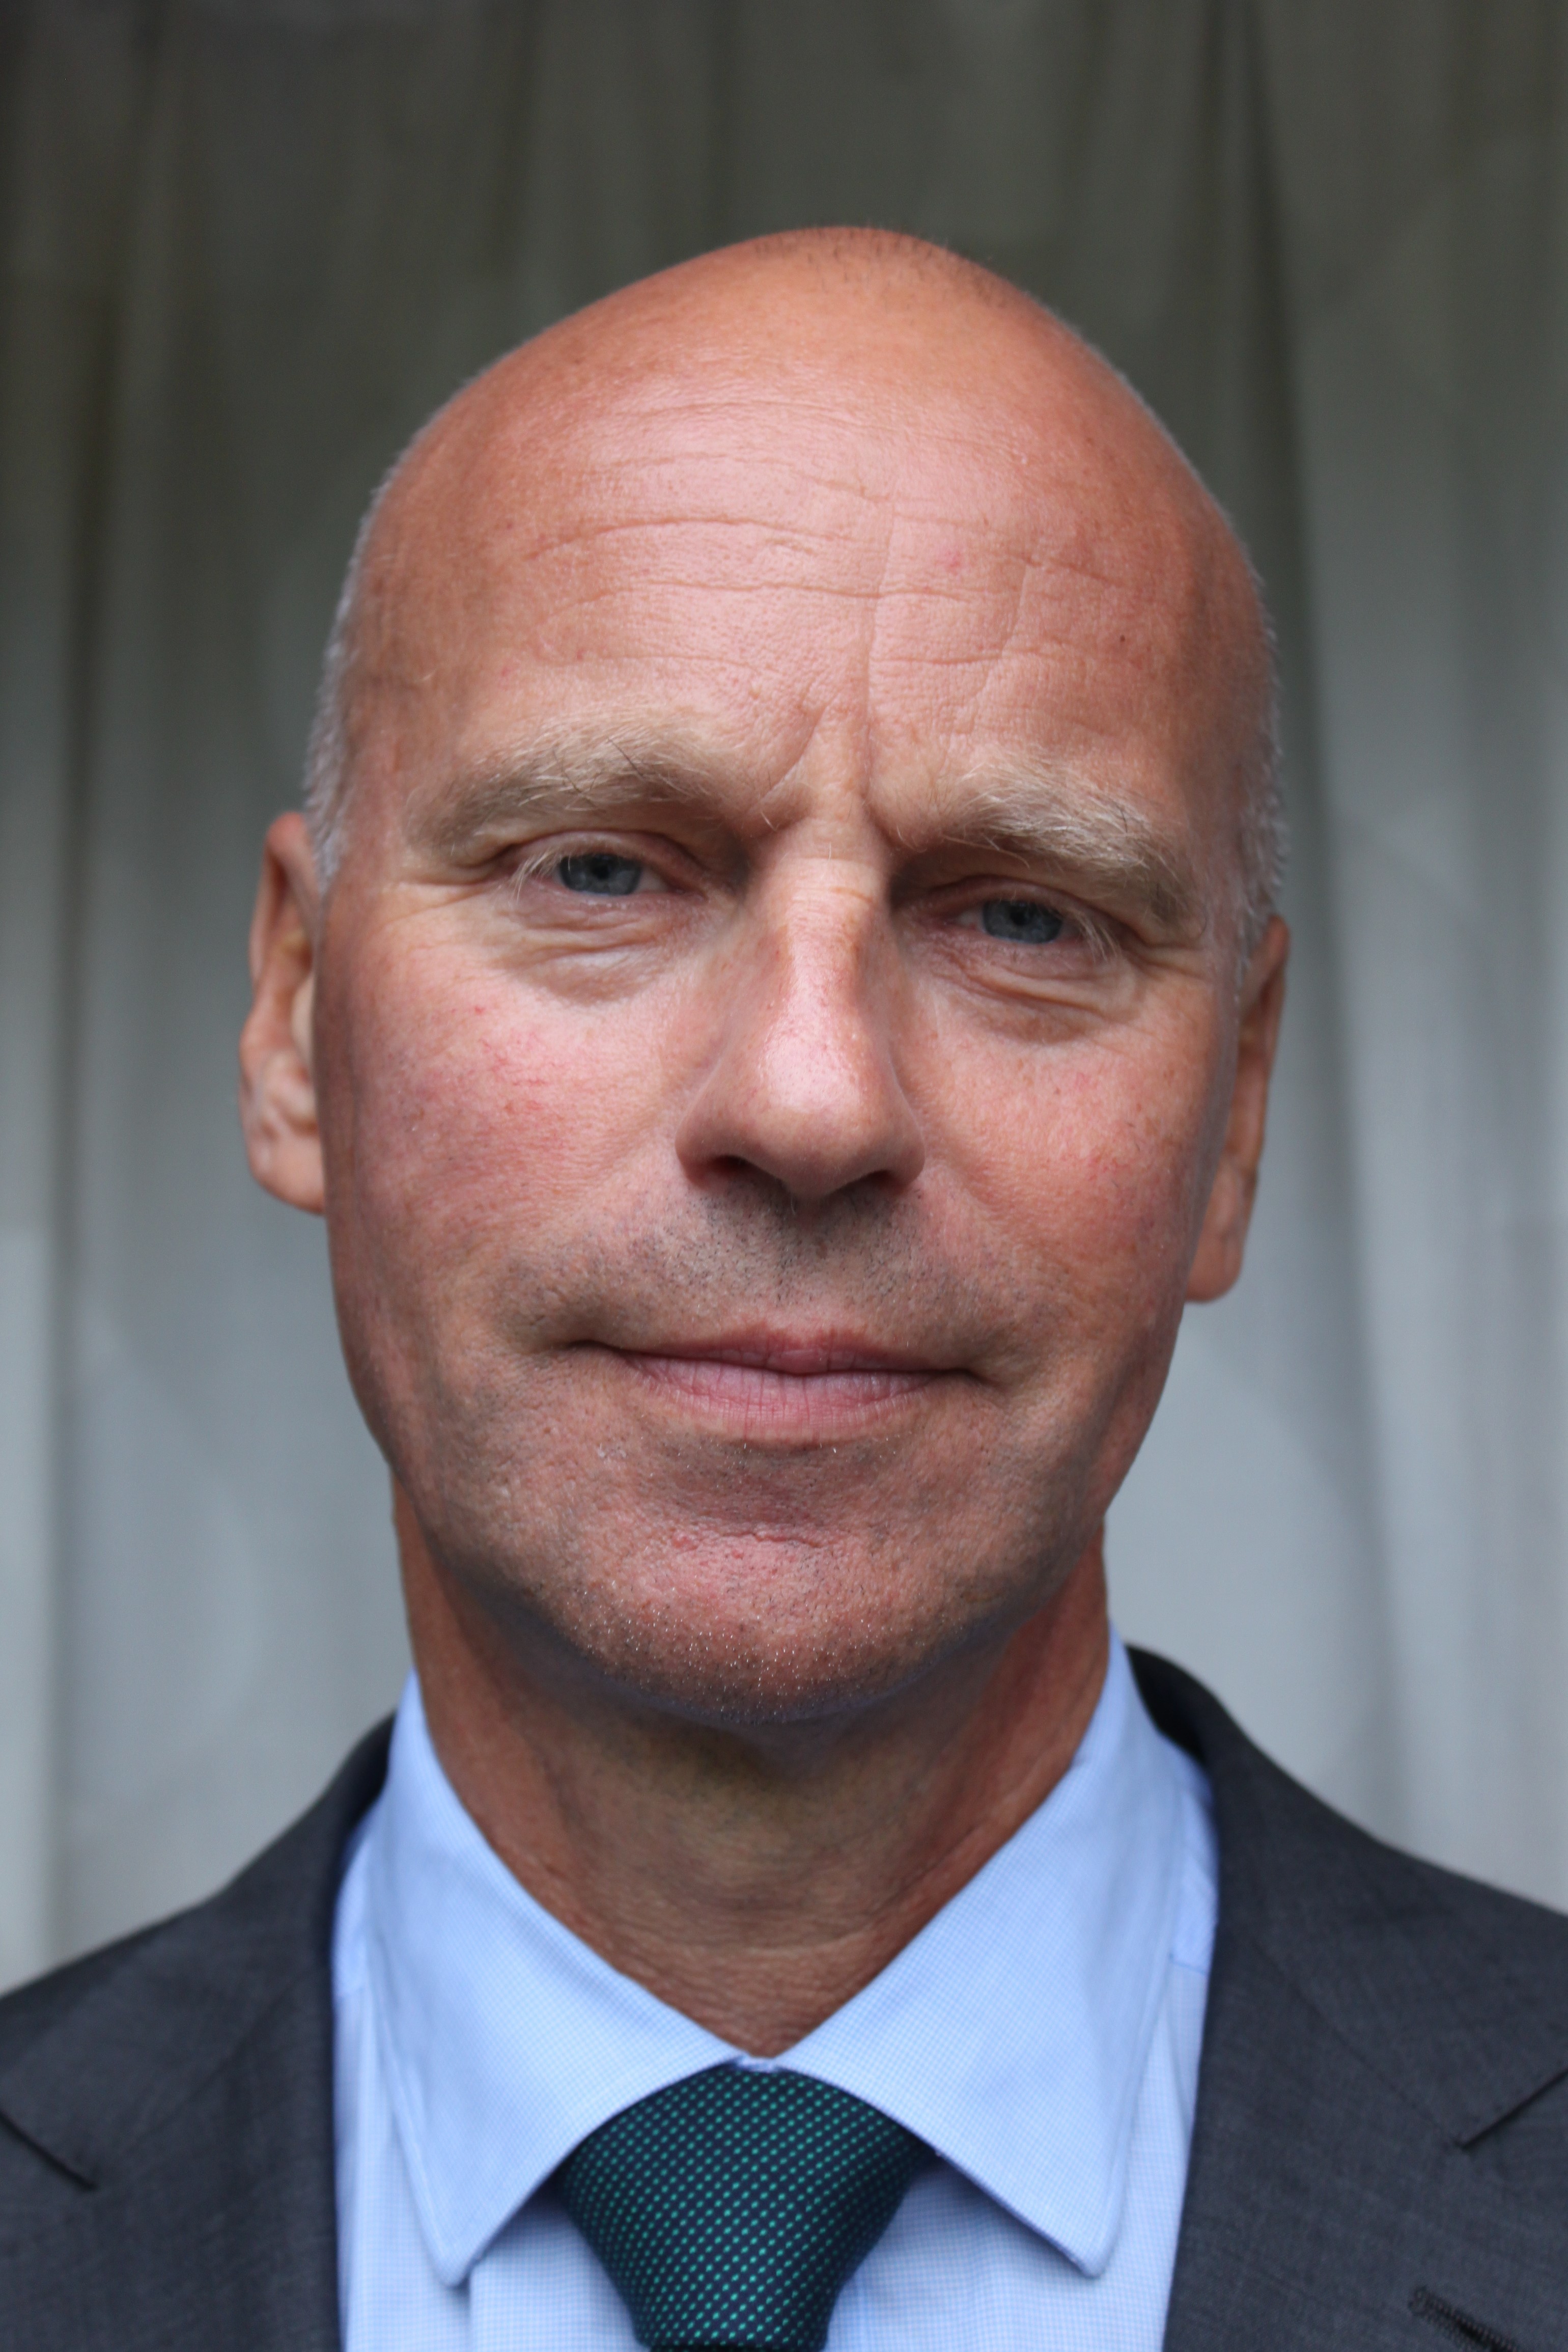 Mr. Hans Olav Ibrekk